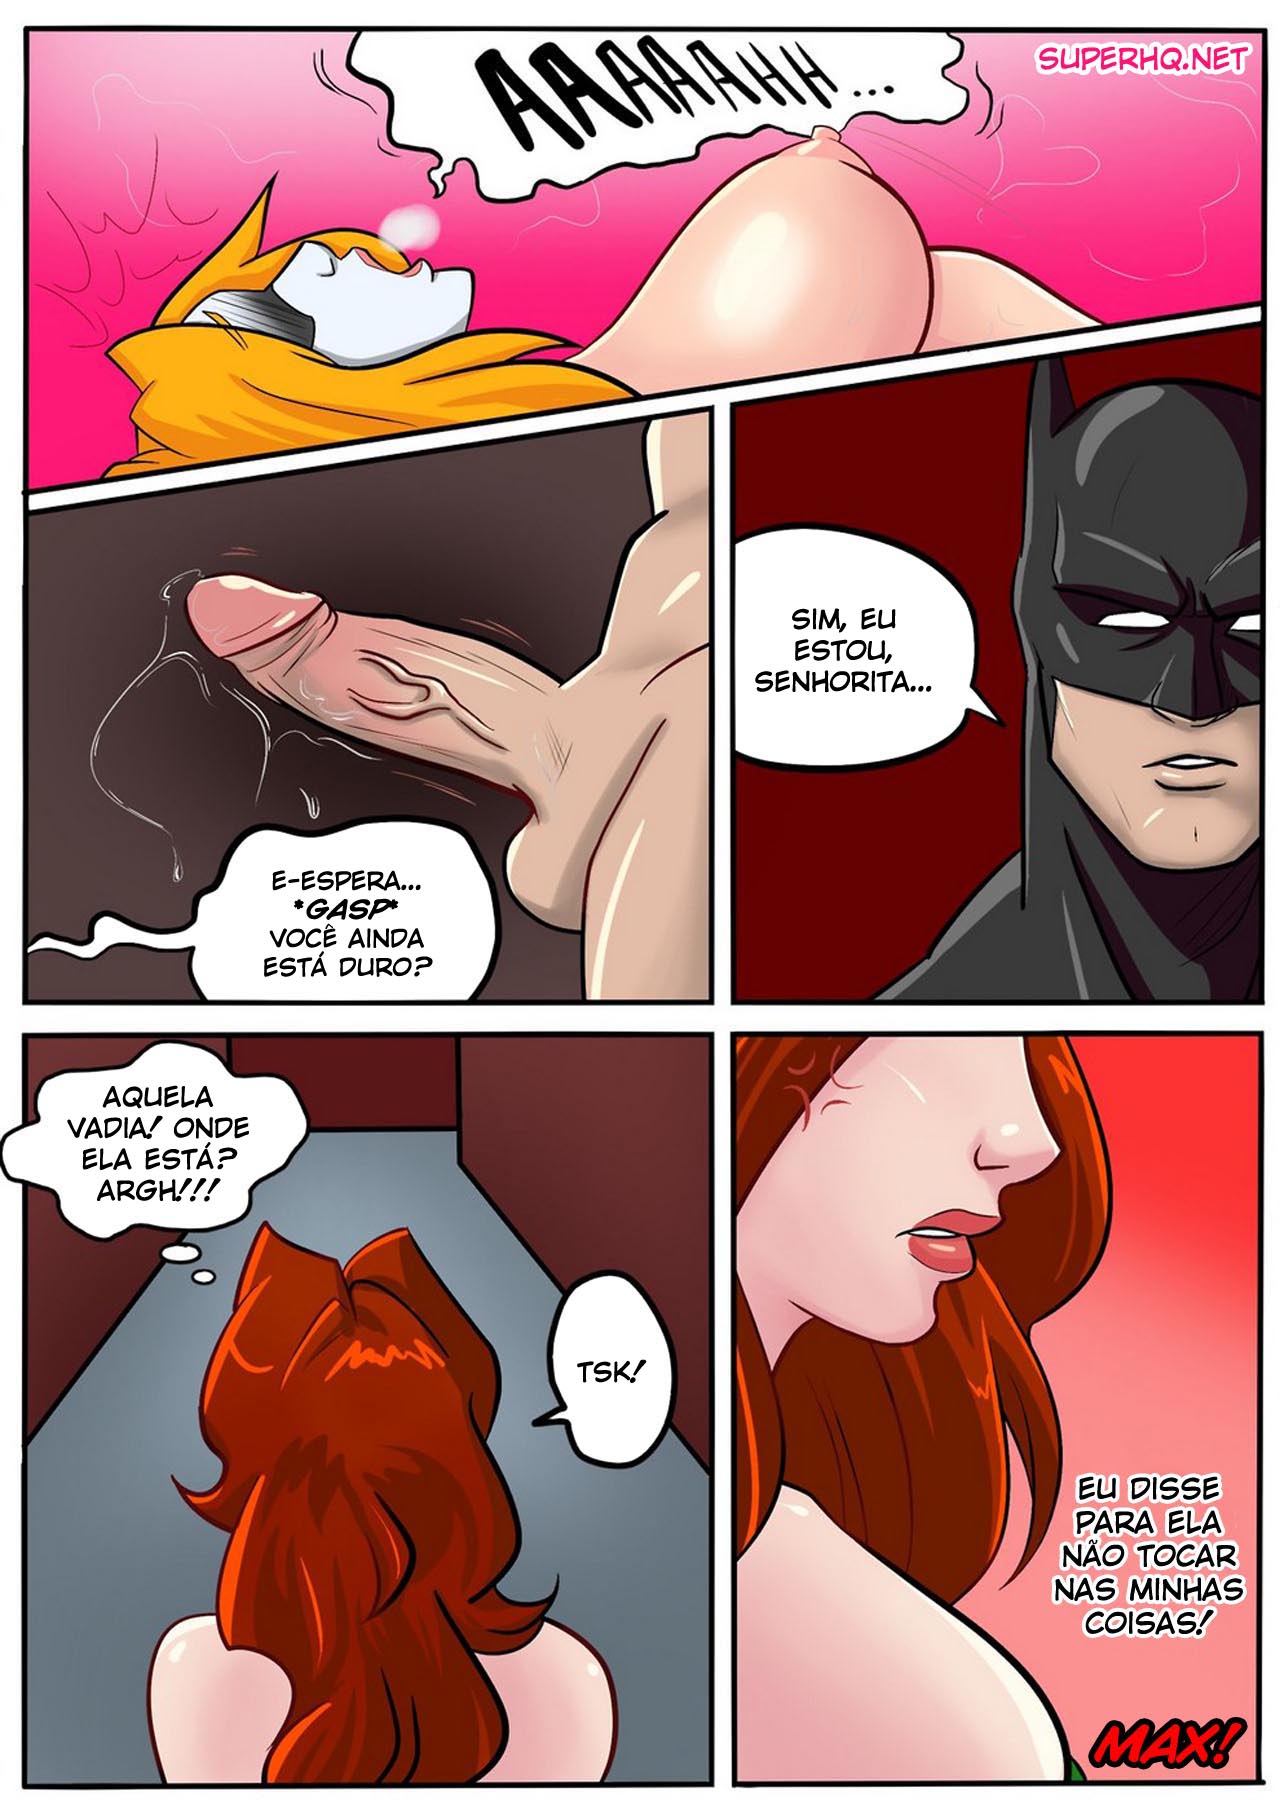 1280px x 1810px - The Sexy Jokeâ€“ Batman vs Harley Quinn Â» 25